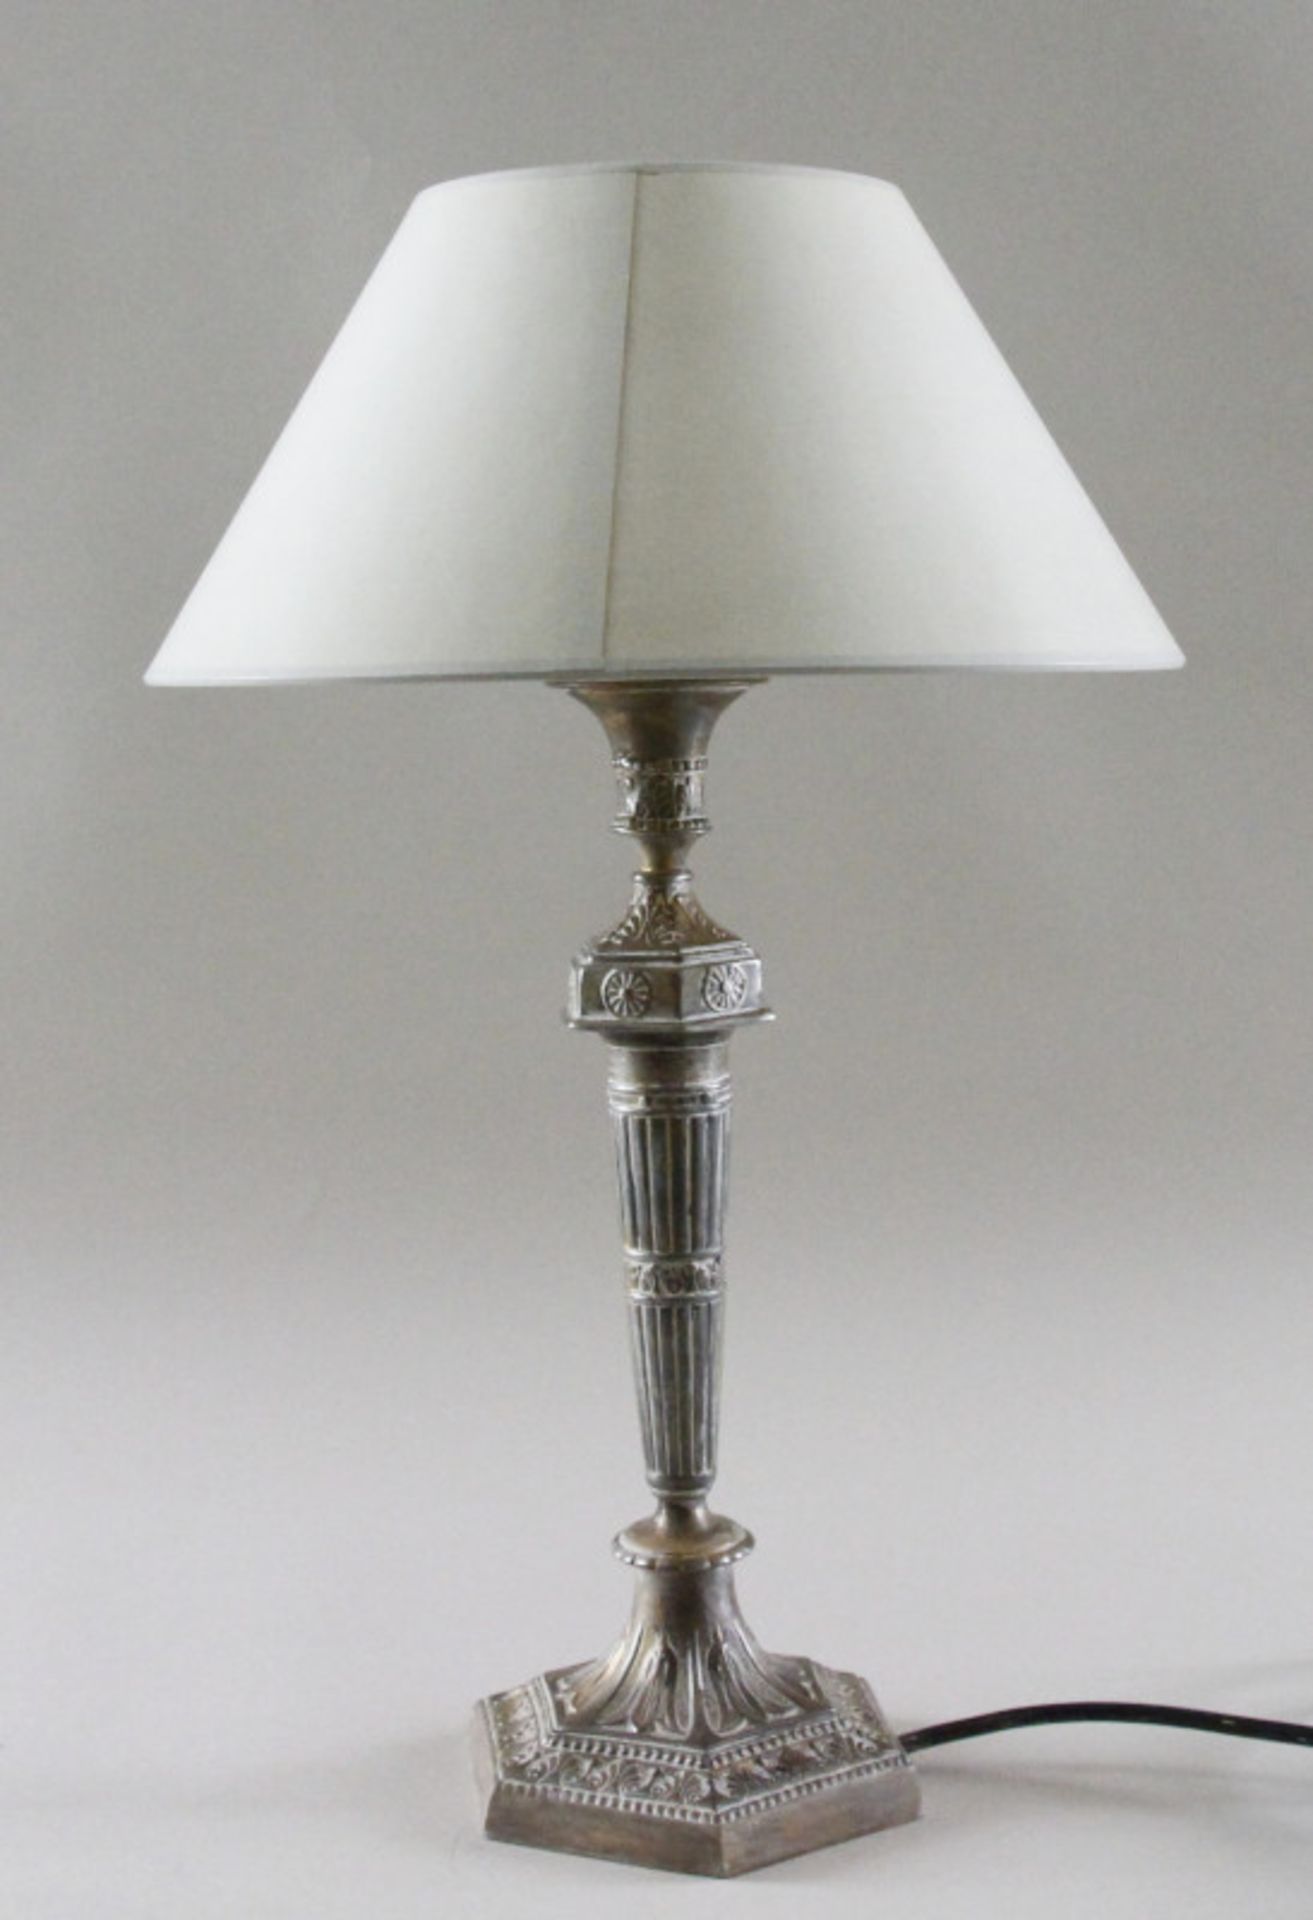 Tischlampe mit Zinnleuchter Fuß, creme/gold gewischt, um 19201-flammig elektrifiziert,